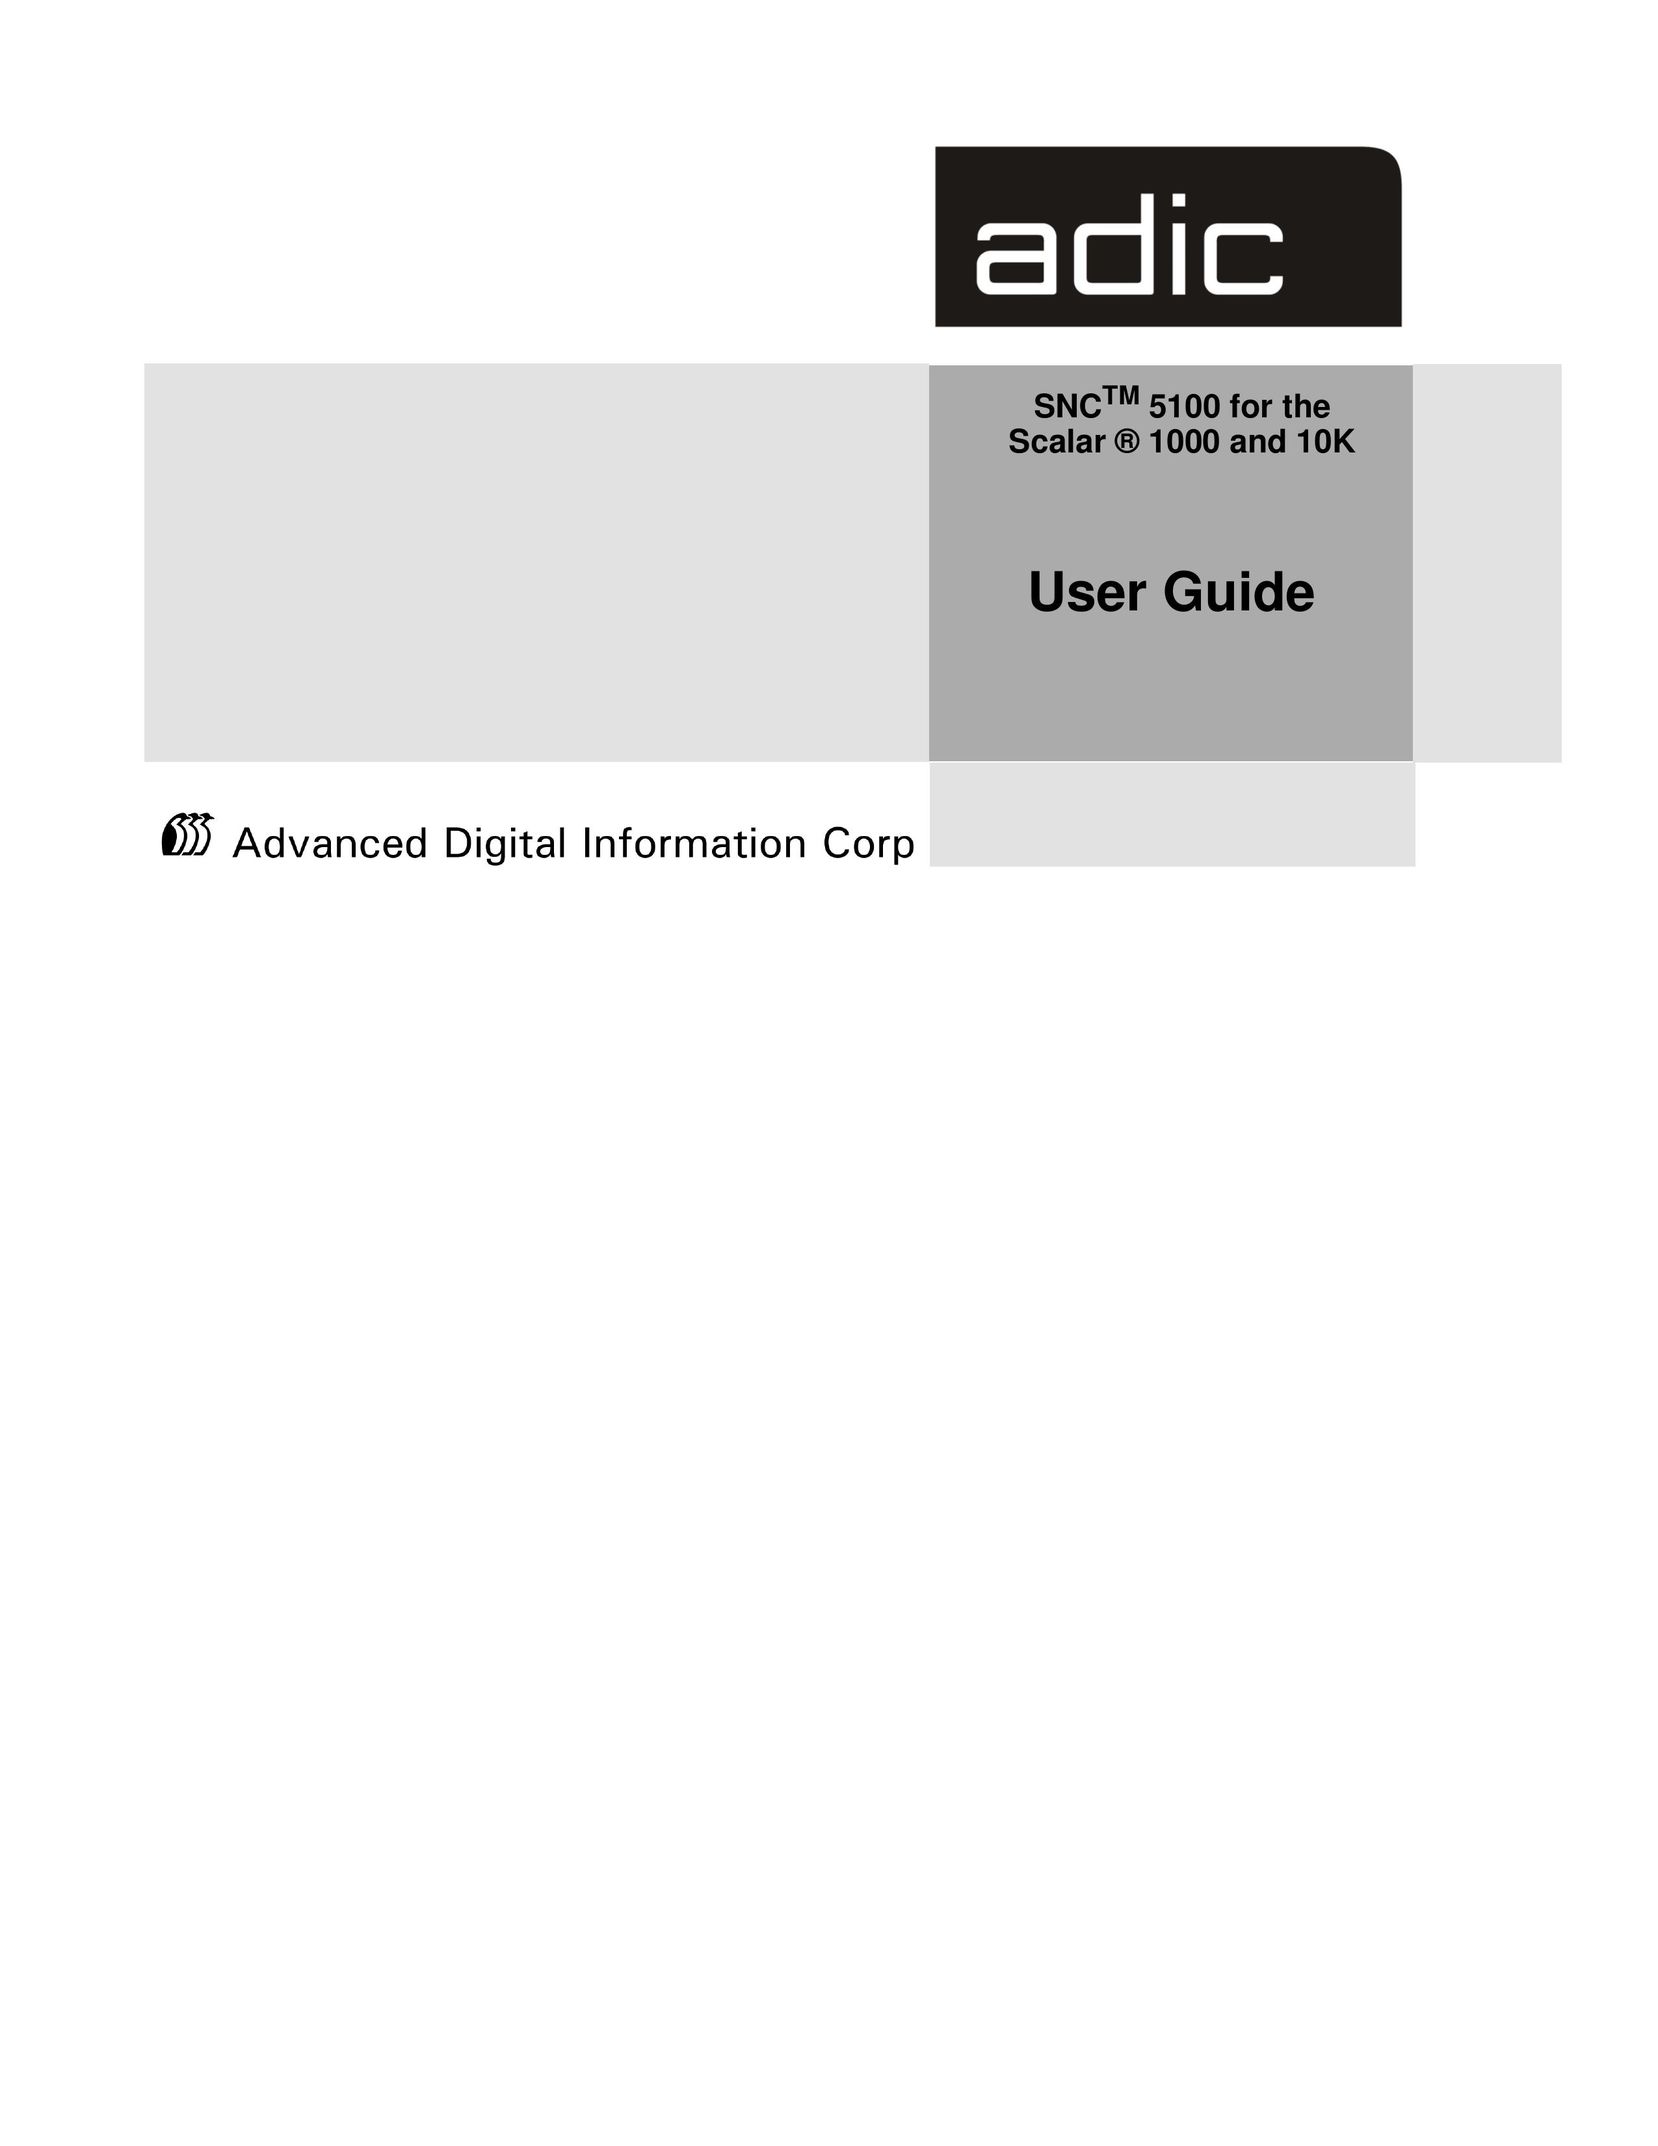 ADIC SNC 5100 Network Card User Manual